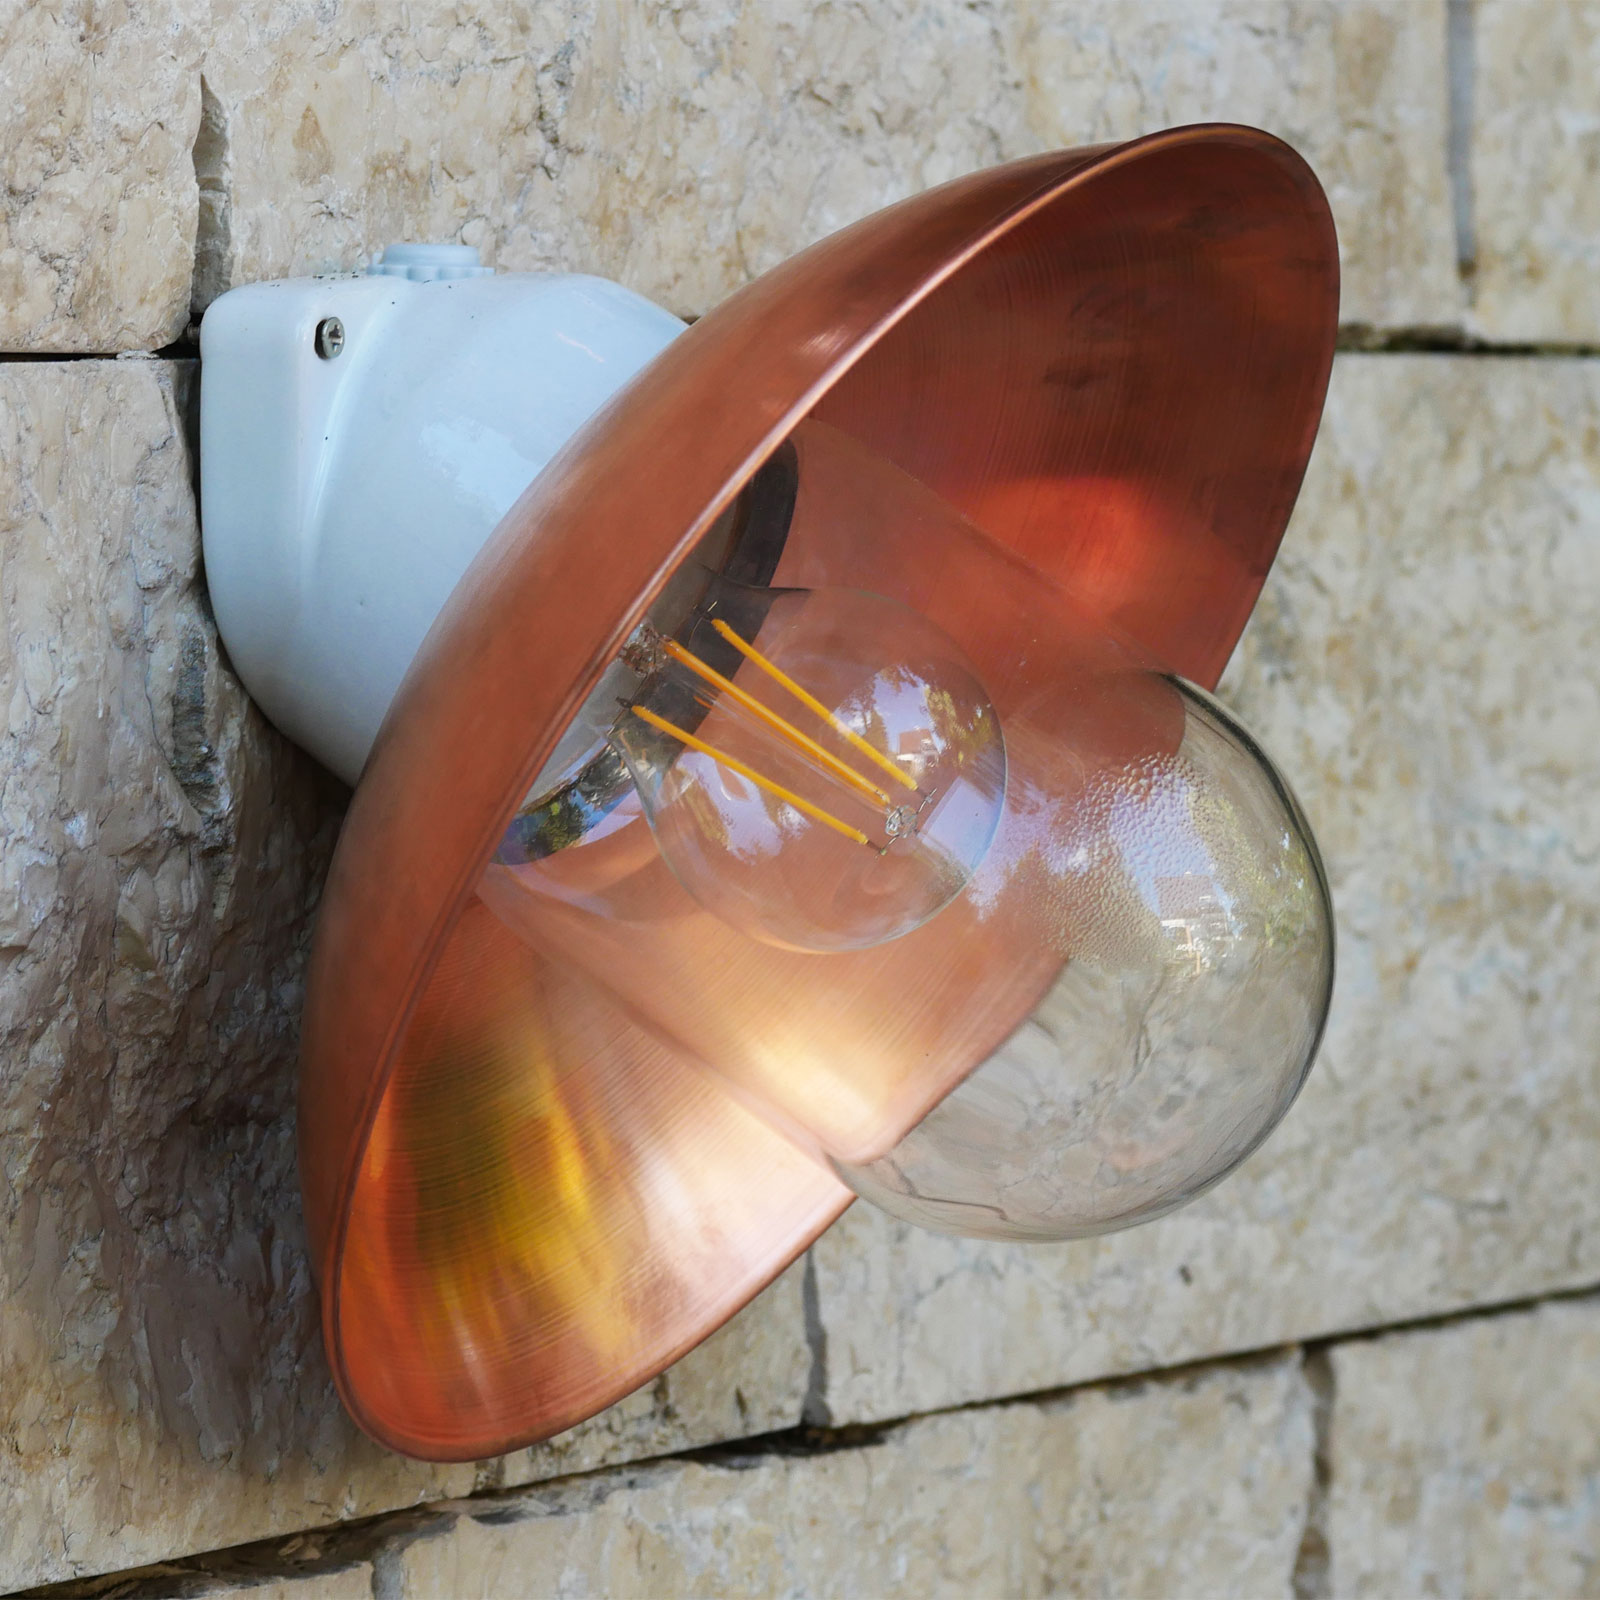 Ceramic Wall Light with Copper Shade WM 2010: Porzellan-Wandleuchte mit Kupferschirm, zu sehen in der Ausführung mit klarem Zylinderglas